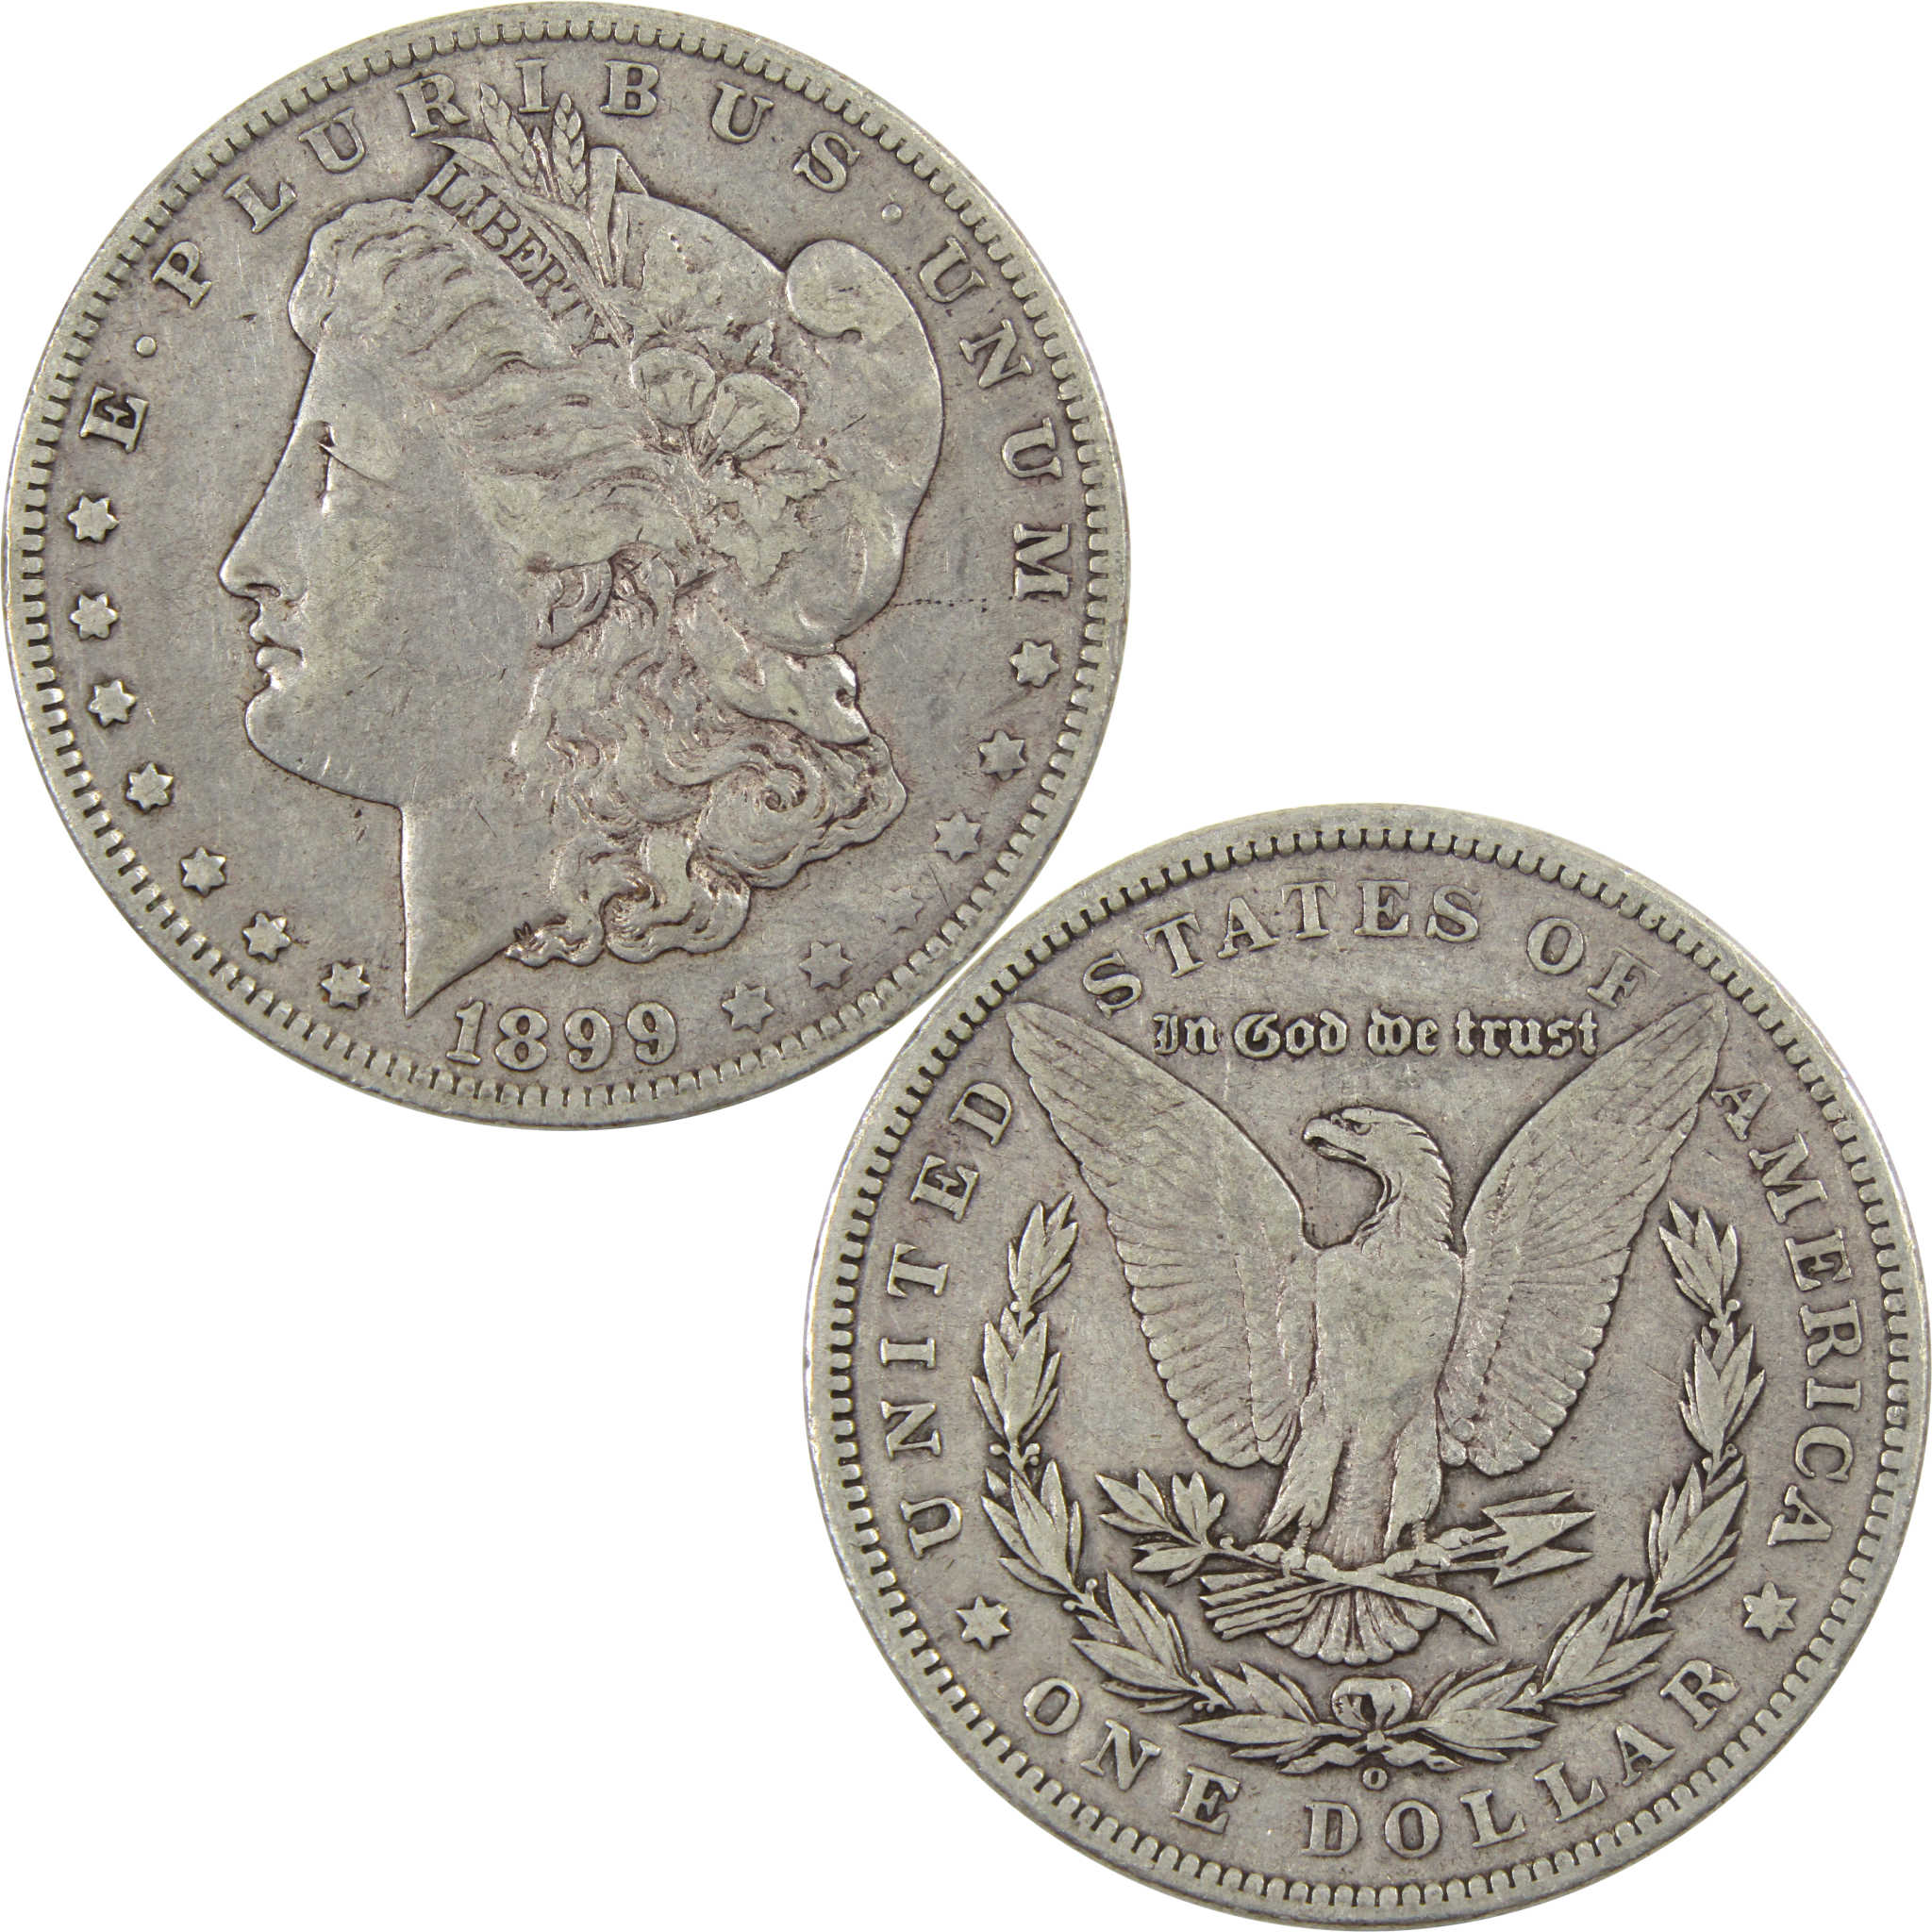 1899 O Micro O Morgan Dollar VF Very Fine 90% Silver $1 Coin SKU:I5941 - Morgan coin - Morgan silver dollar - Morgan silver dollar for sale - Profile Coins &amp; Collectibles